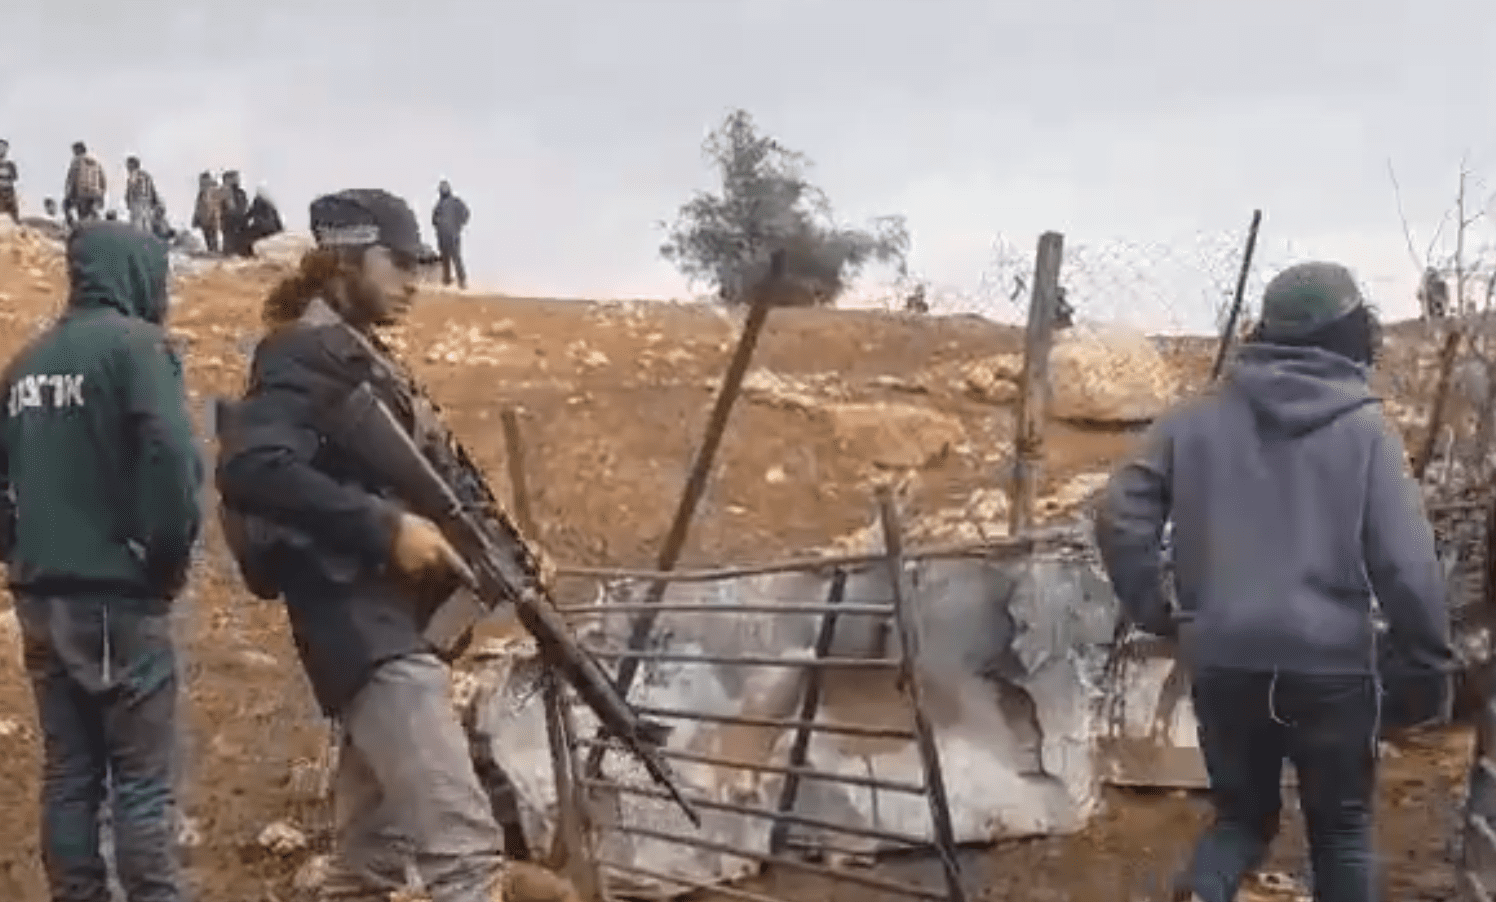 Coloni armati protetti dai militari attaccano i pastori palestinesi e rubano le pecore: il video